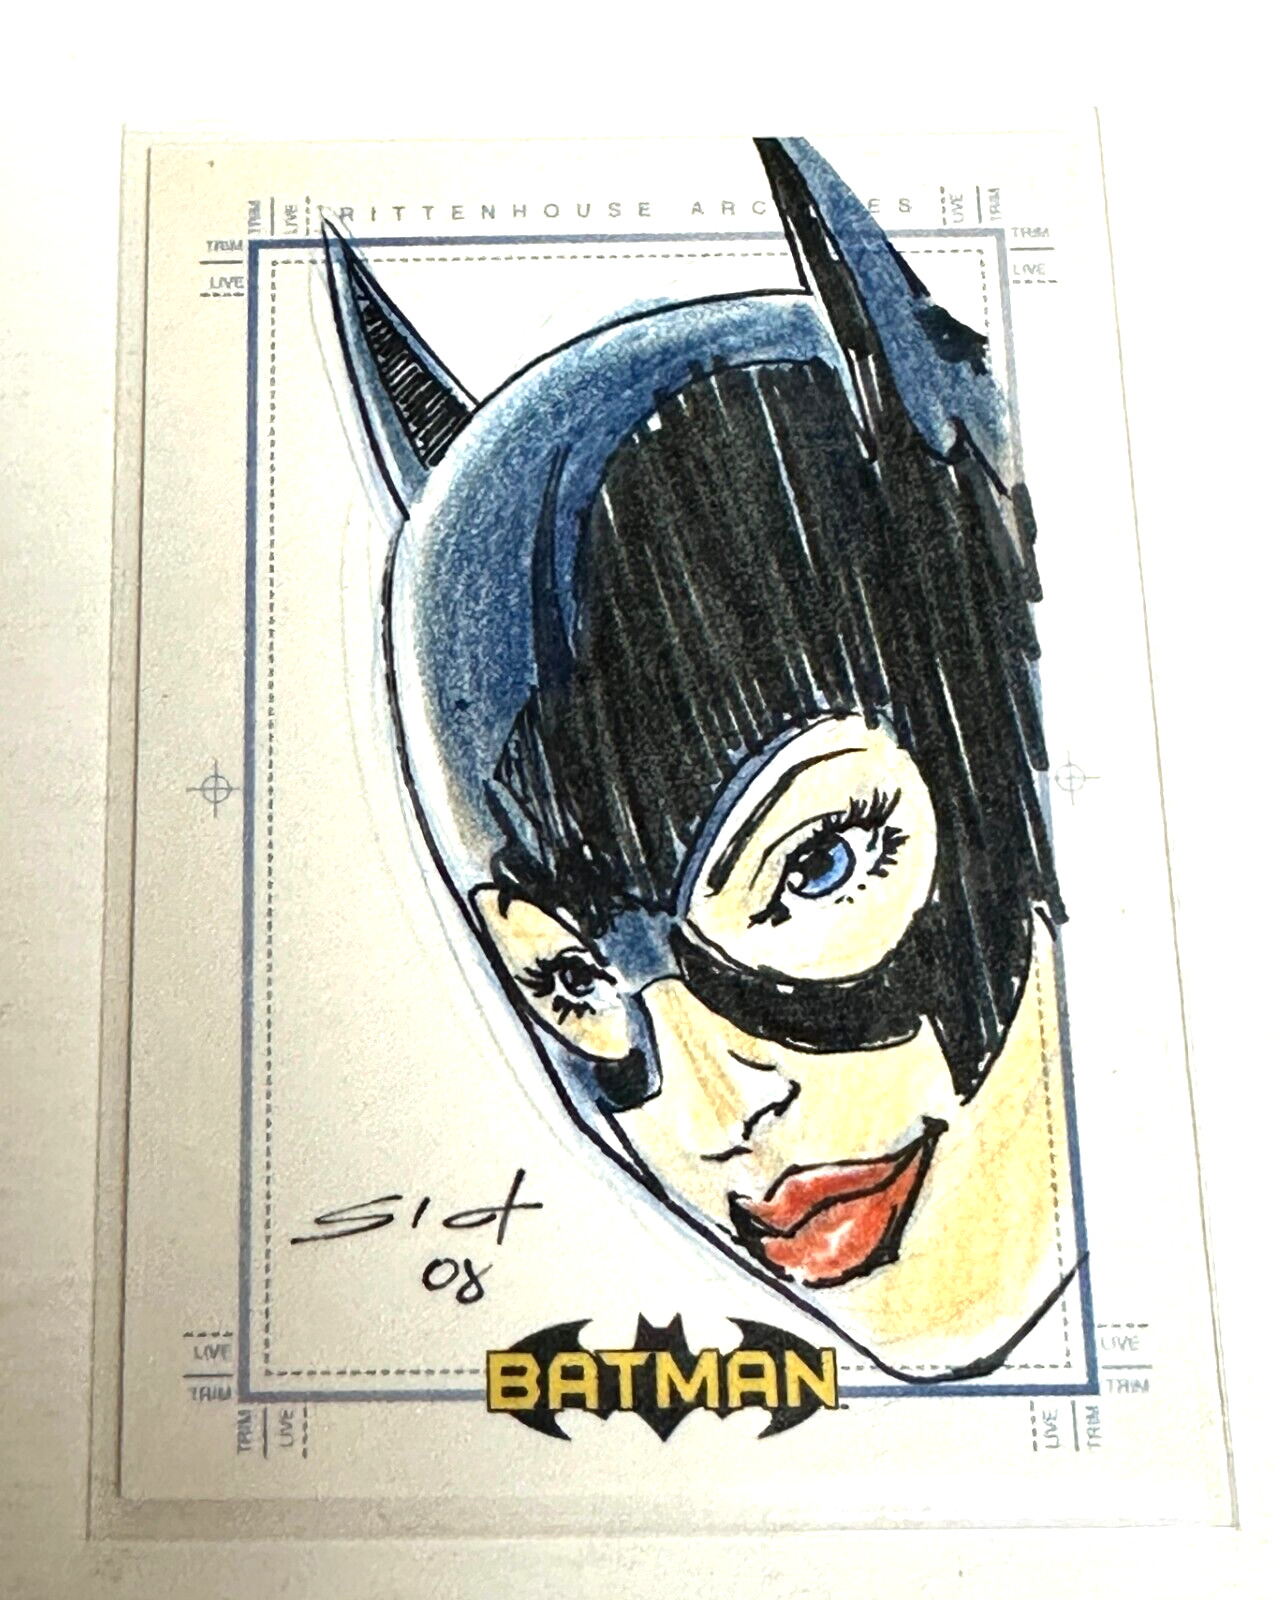 2008 Batman Archives Original Art Color Sketch Card Cat Woman by Sict